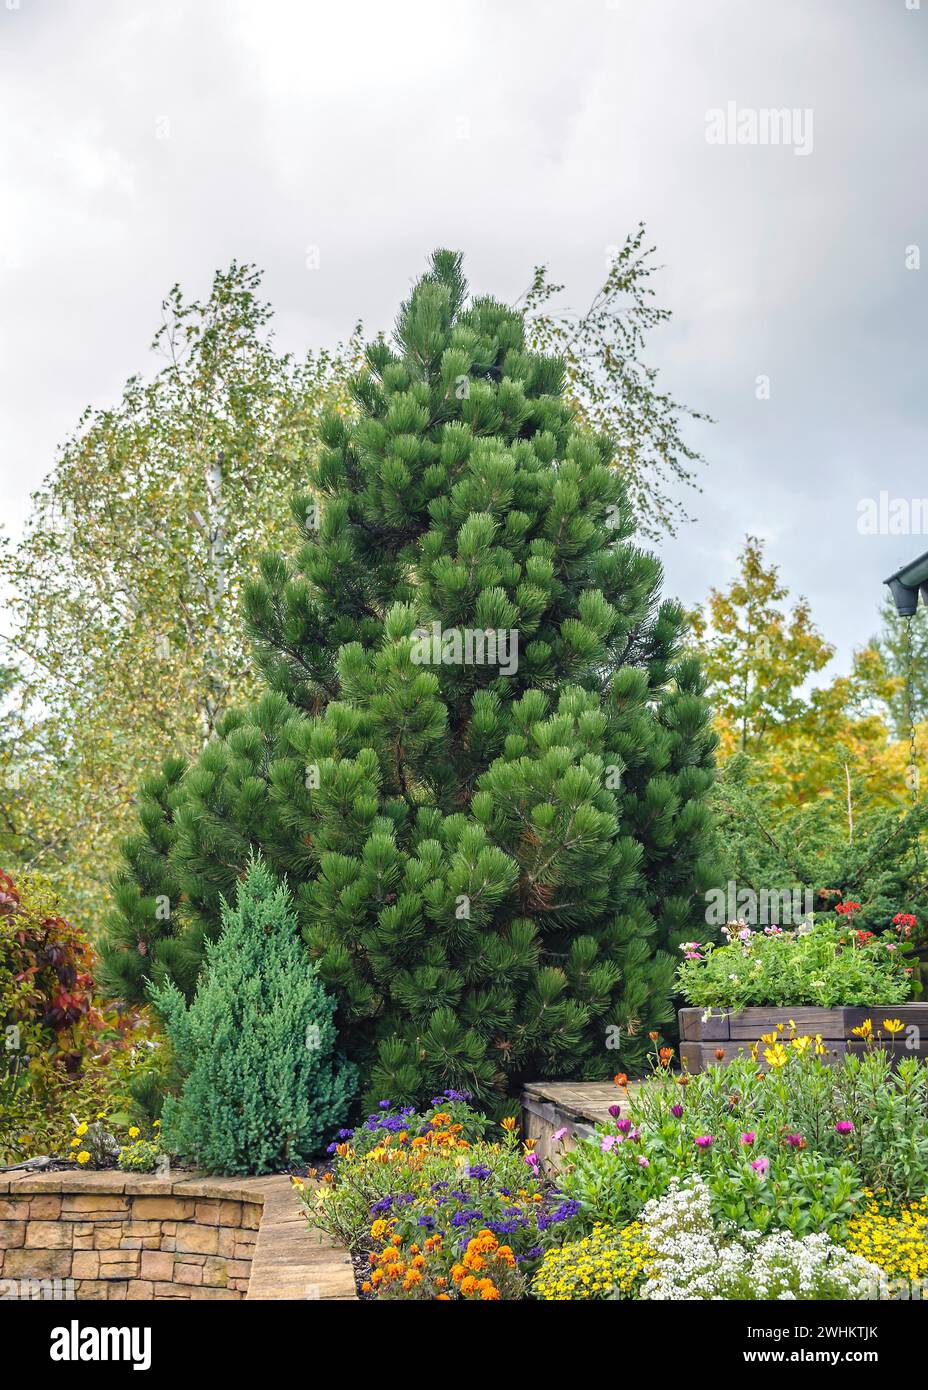 Snakeskin Pine (Pinus heldreichii 'Compact Gem'), Erich Schleich, Federal Republic of Germany Stock Photo